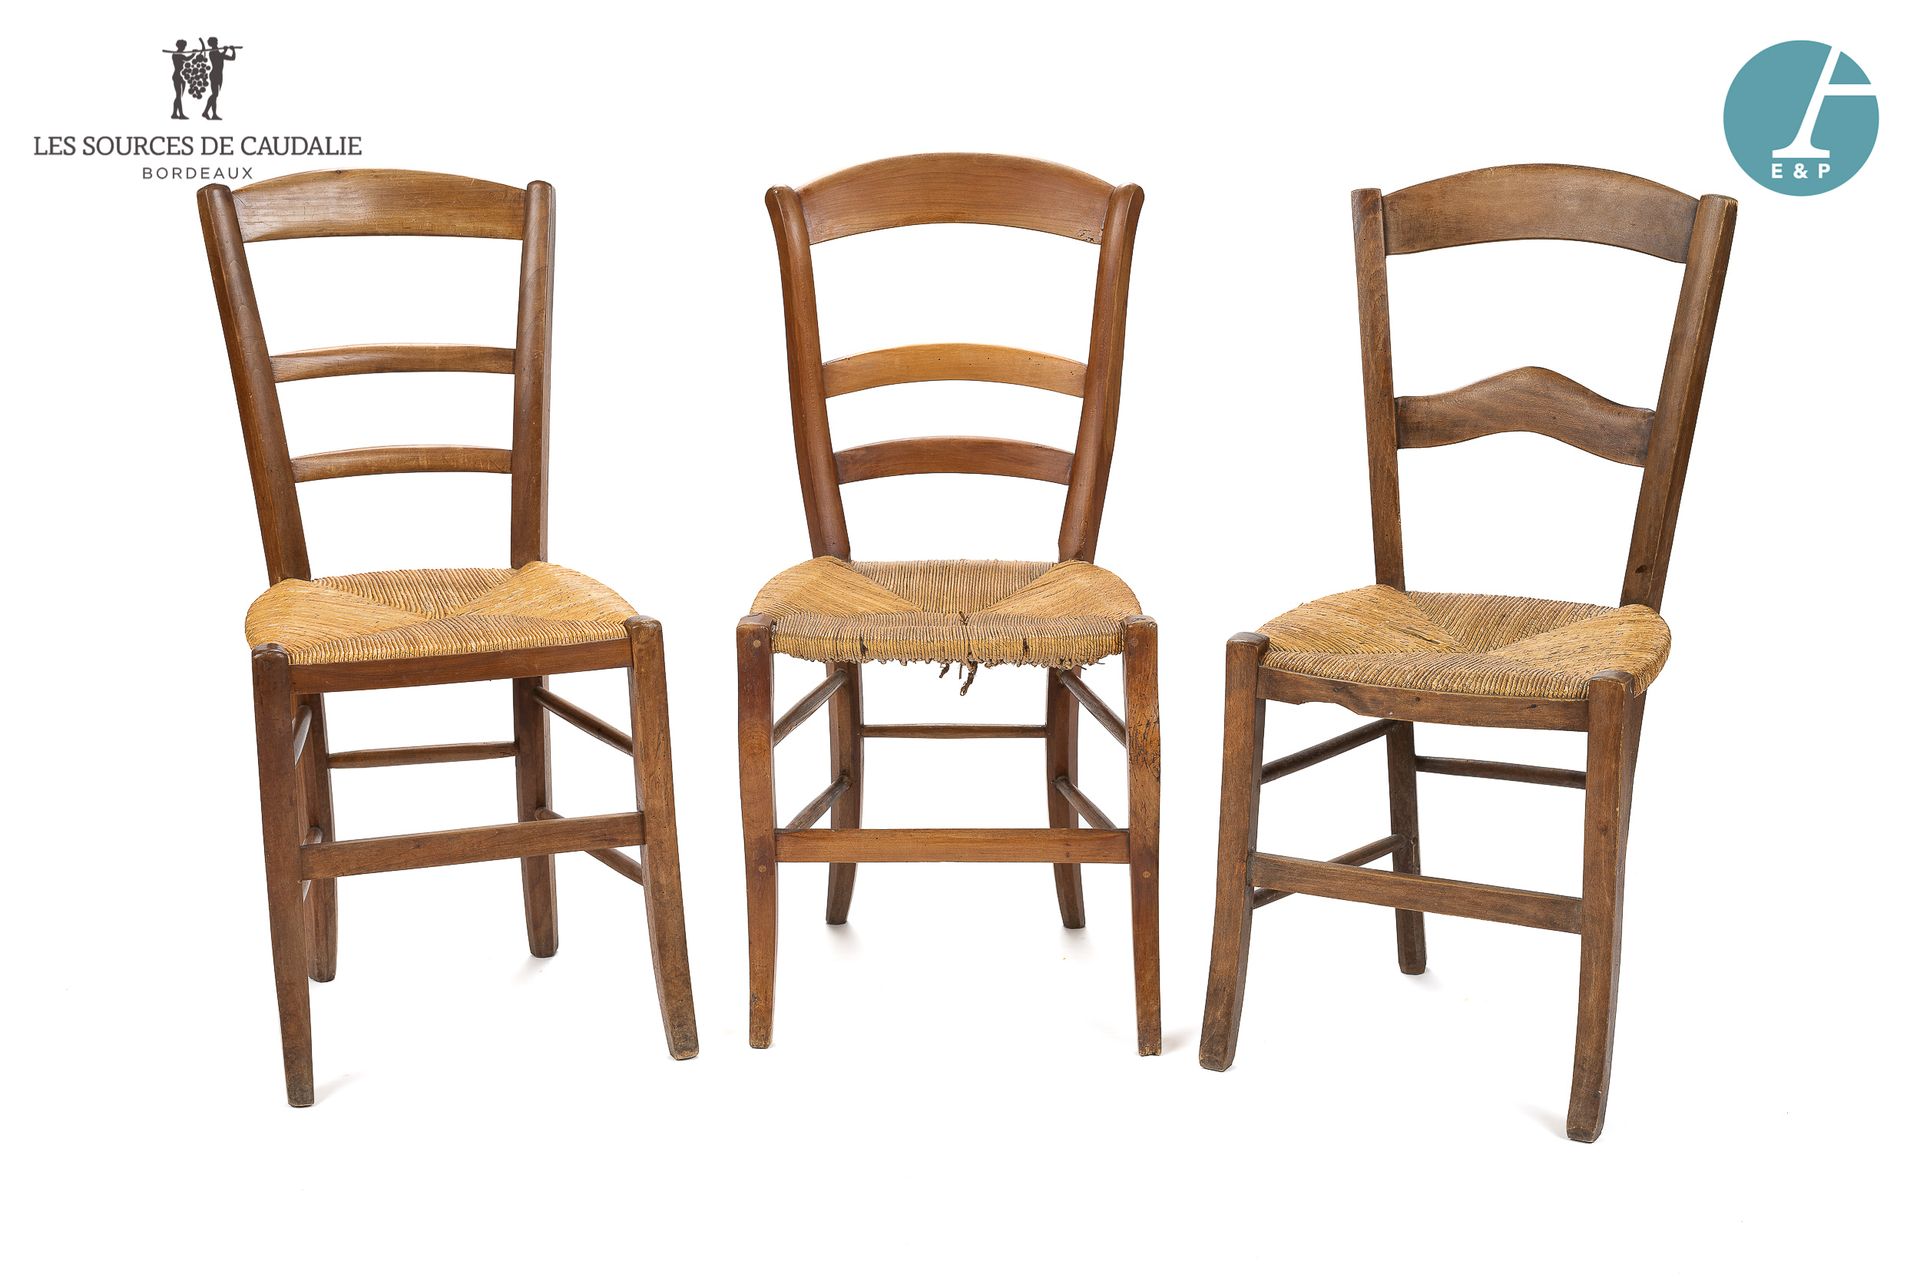 Null Set aus drei strohgefüllten Stühlen. Zustand der Benutzung.

H: 86cm - B: 3&hellip;